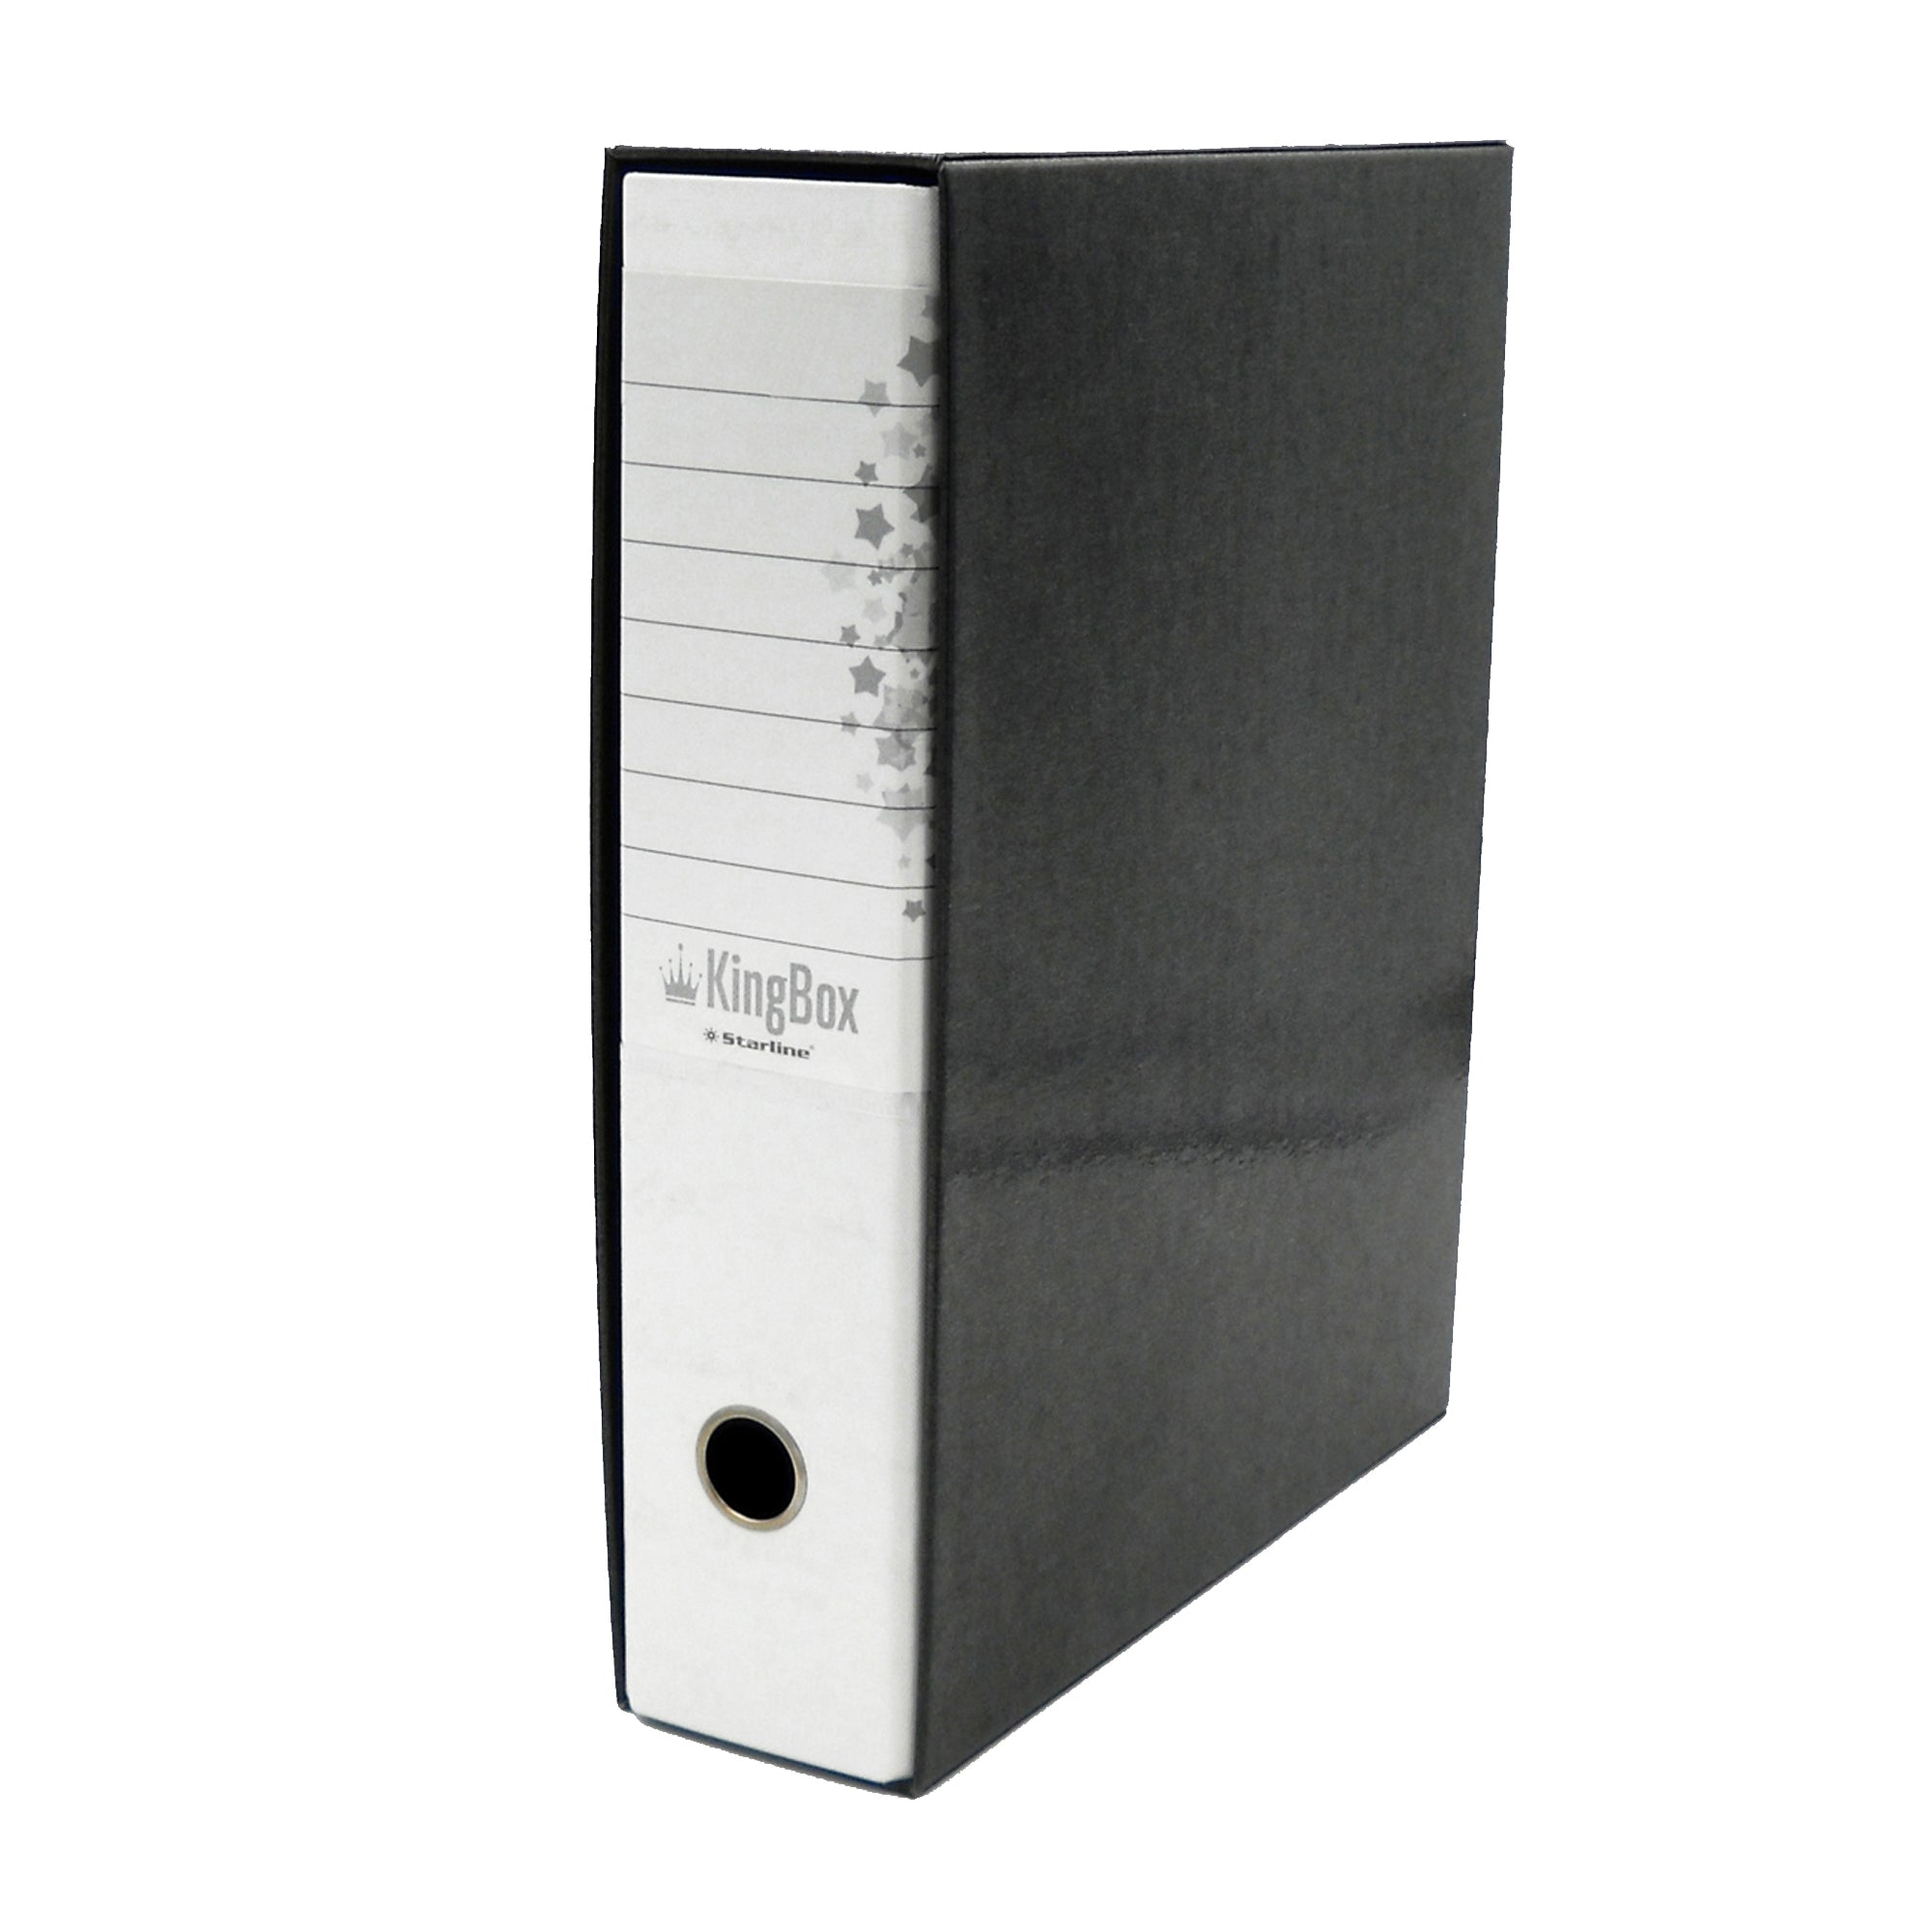 starline-registratore-kingbox-f-to-protocollo-dorso-8cm-bianco